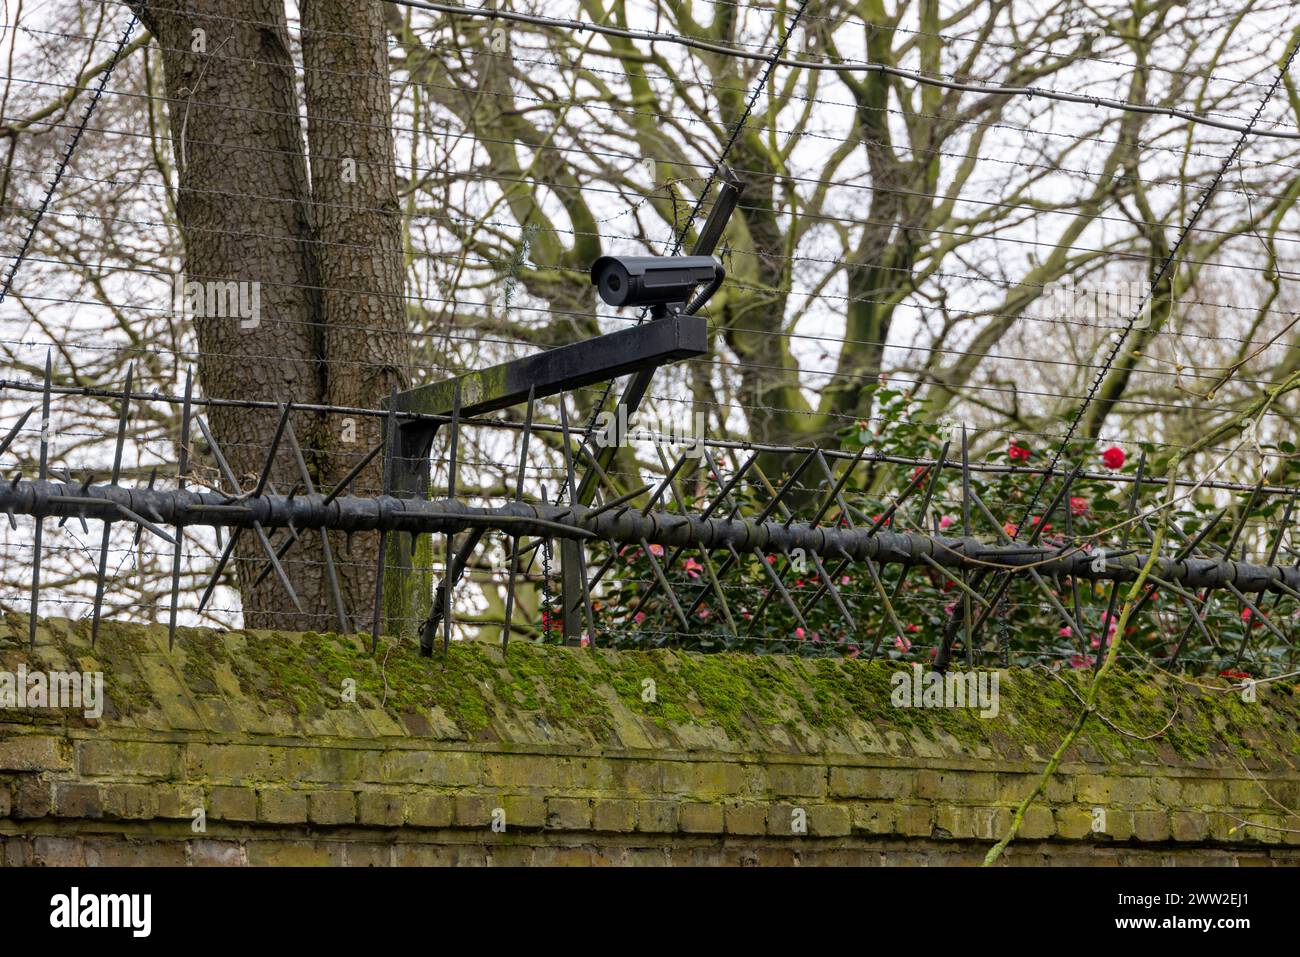 CCTV camera, Buckingham palace wall, London, UK Stock Photo